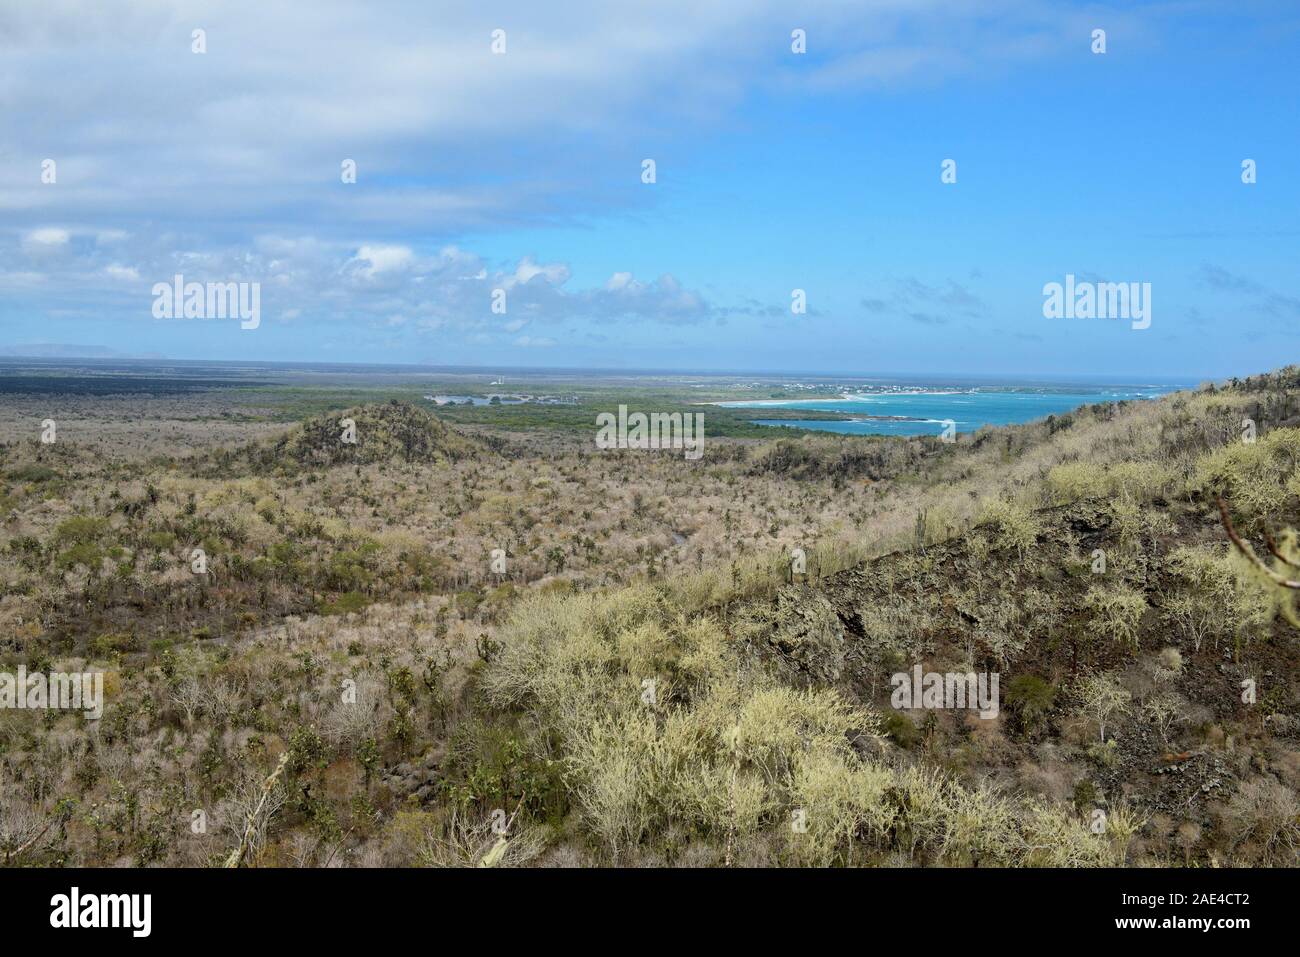 Panoramic view of Isla Isabela, Galapagos Islands, Ecuador Stock Photo